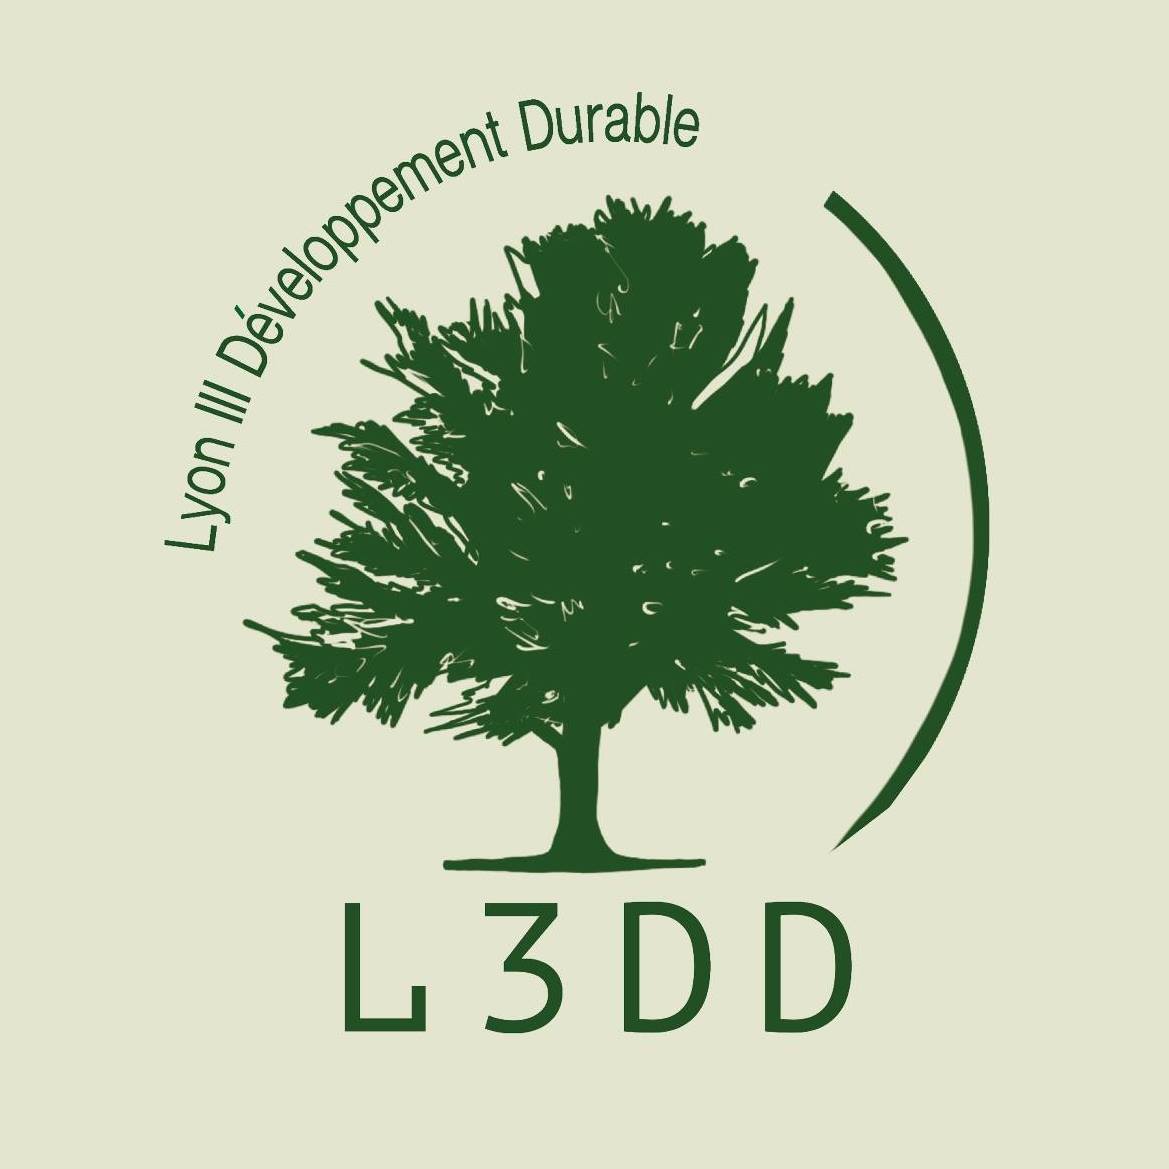 L3DD